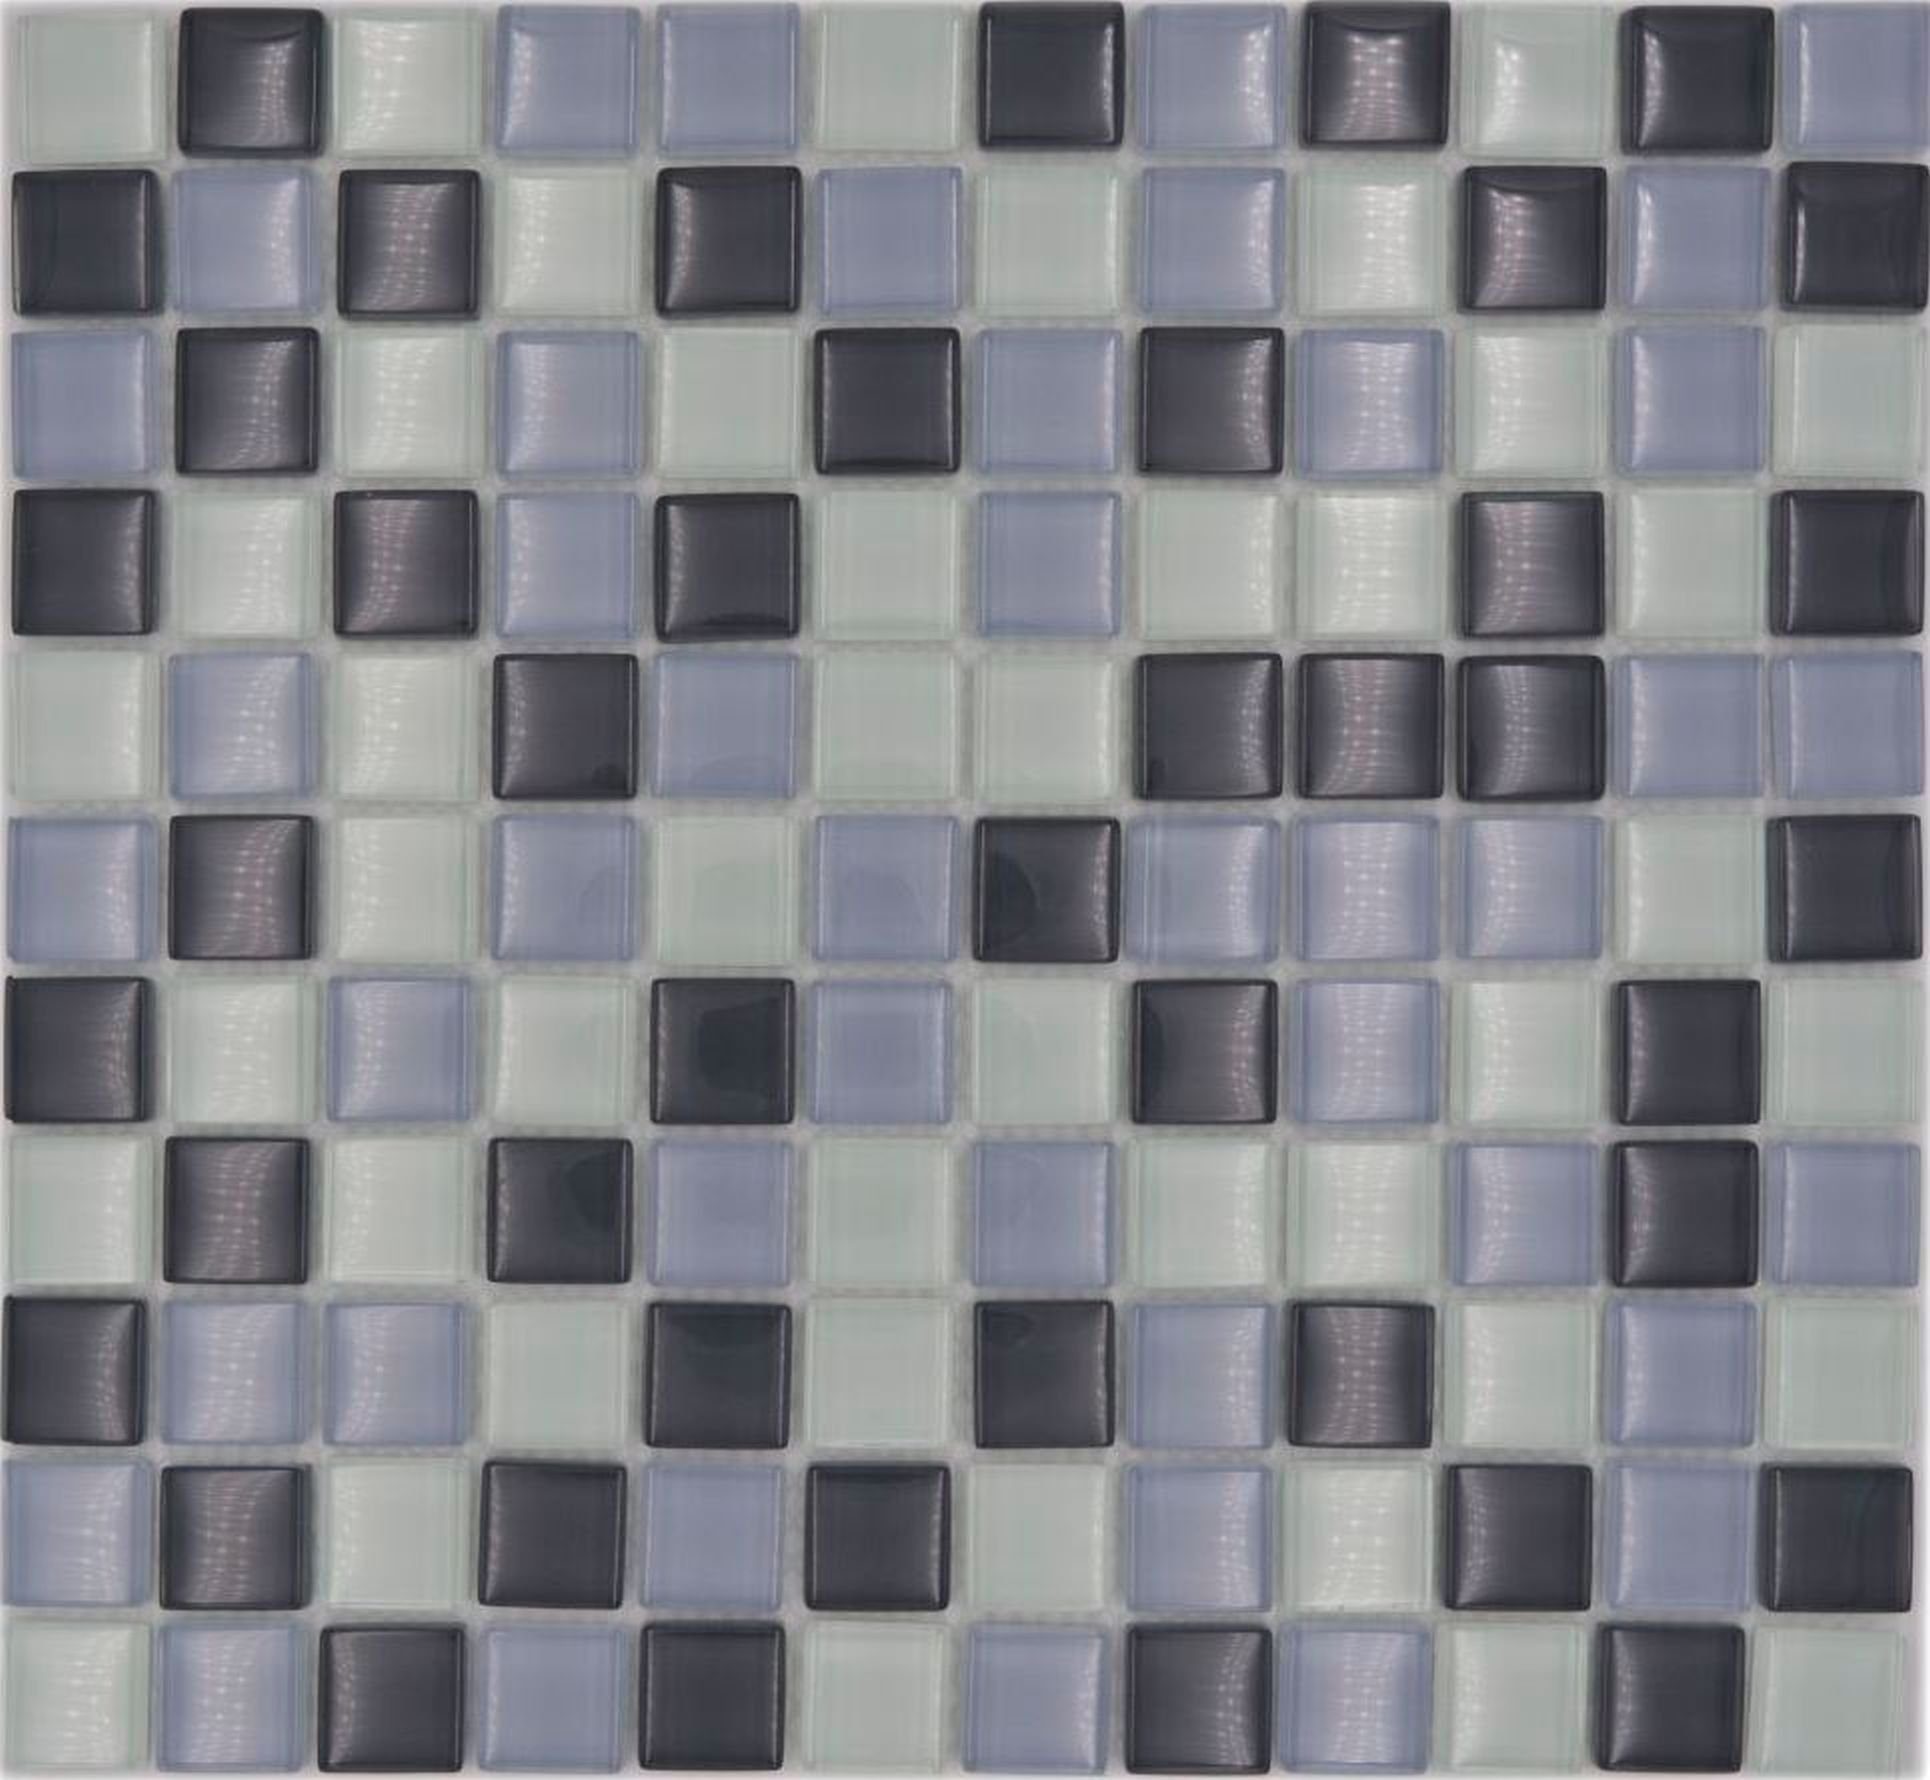 Mosani Mosaikfliesen Glasmosaik Mosaikfliesen weiss grau anthrazit BAD WC